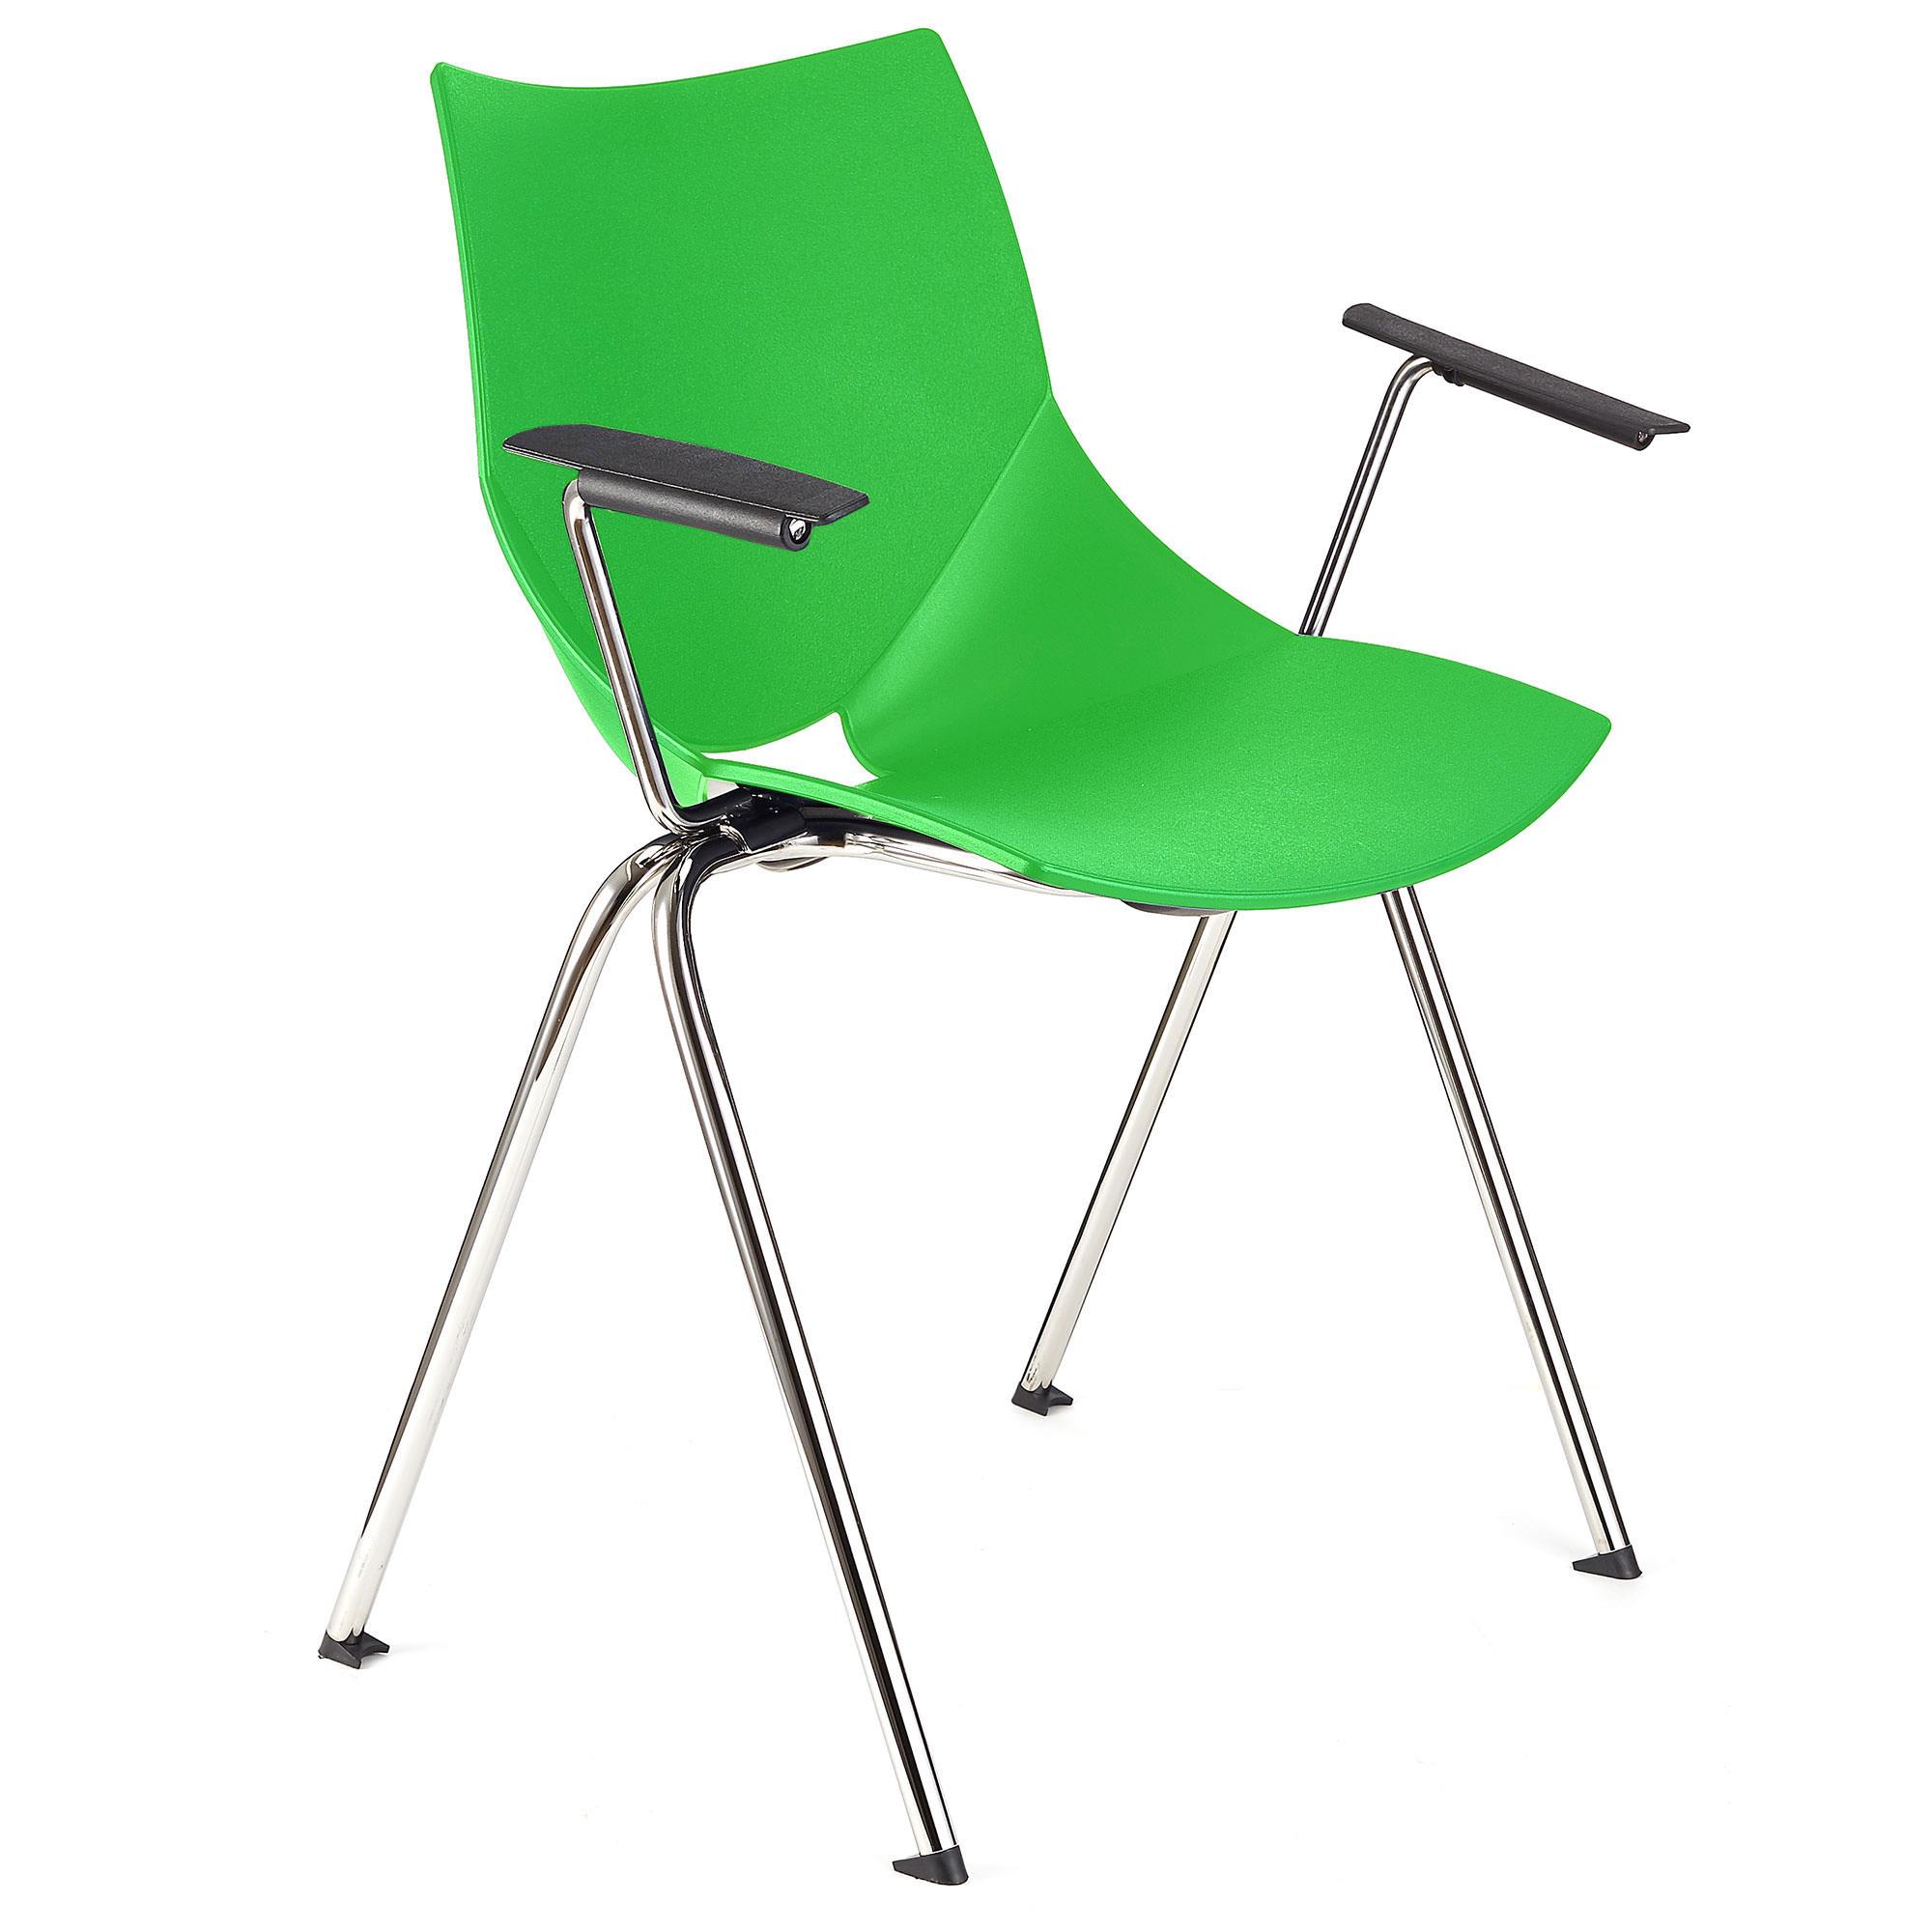 Cadeira de Visita AMIR COM BRAÇOS, Confortável e Prática, Empilhável, Cor Verde